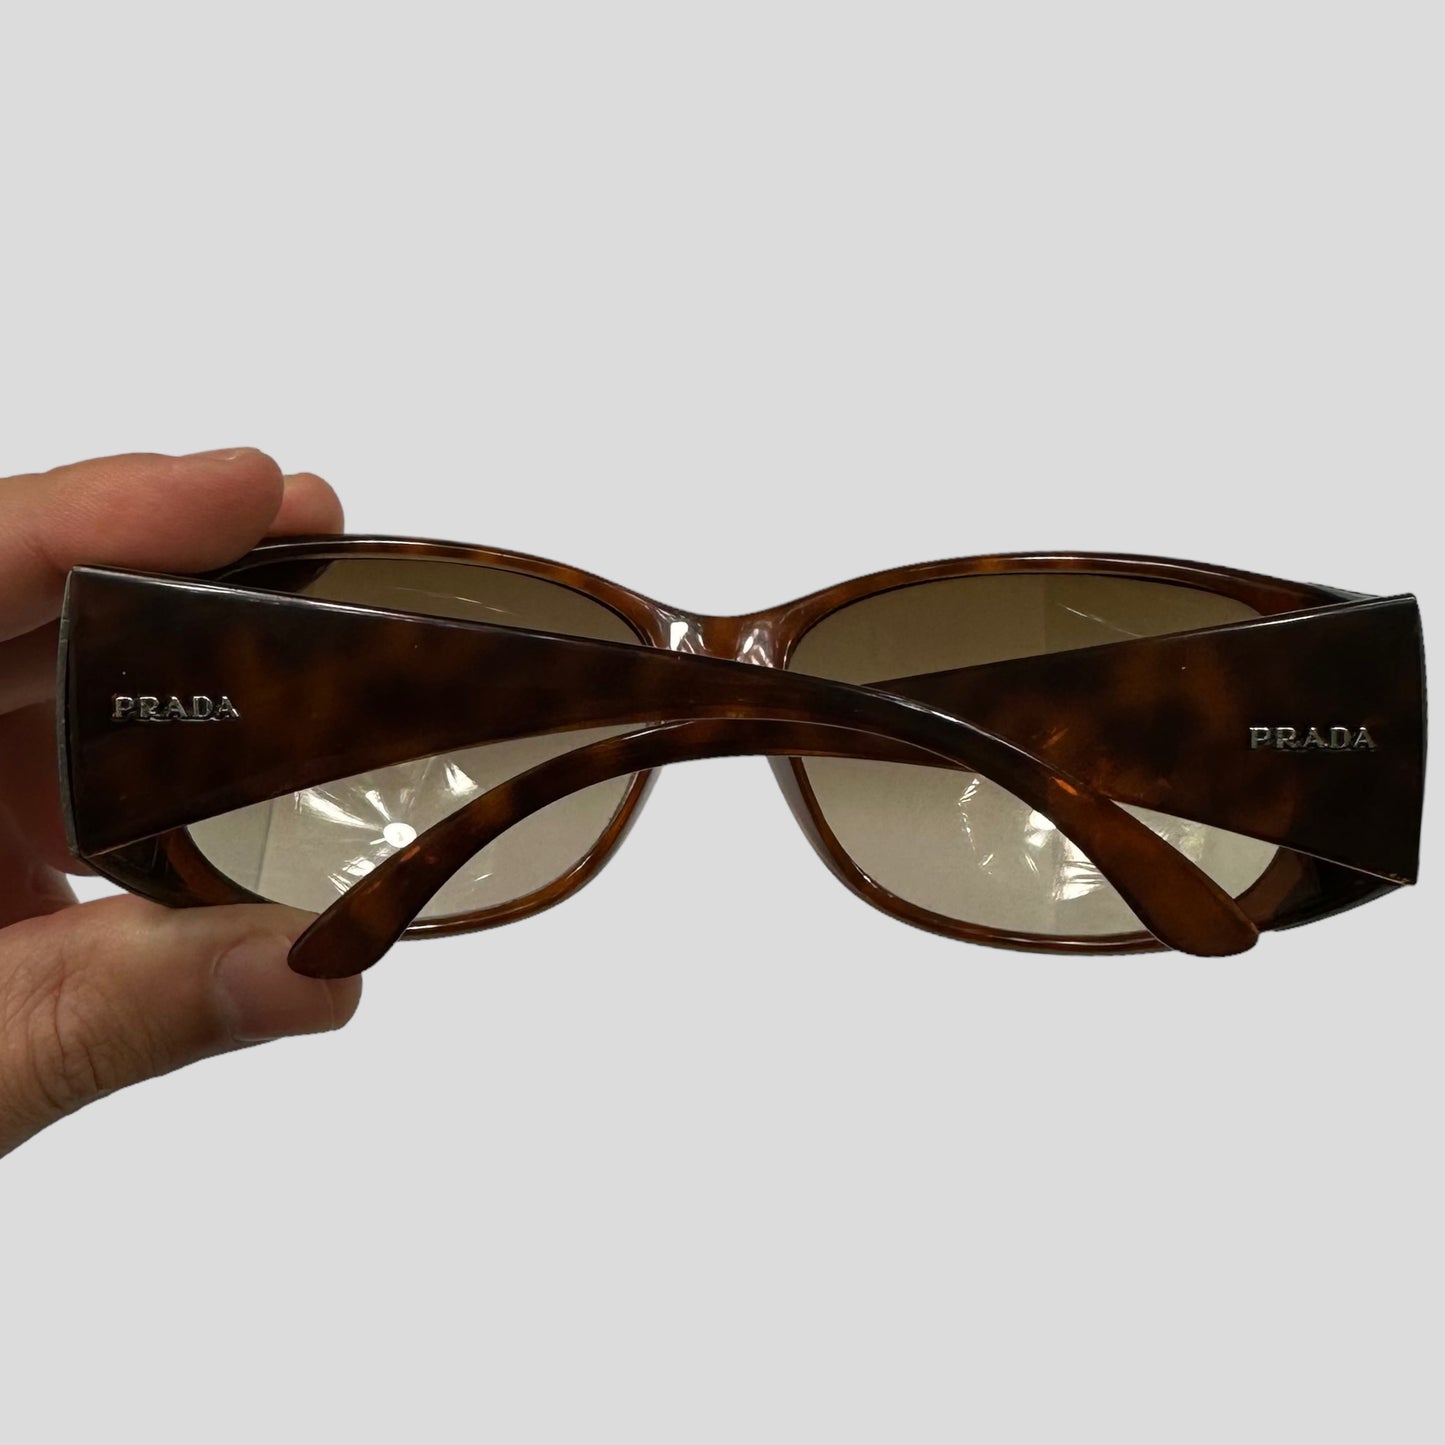 Prada Milano Tortoiseshell Wraparound Sunglasses